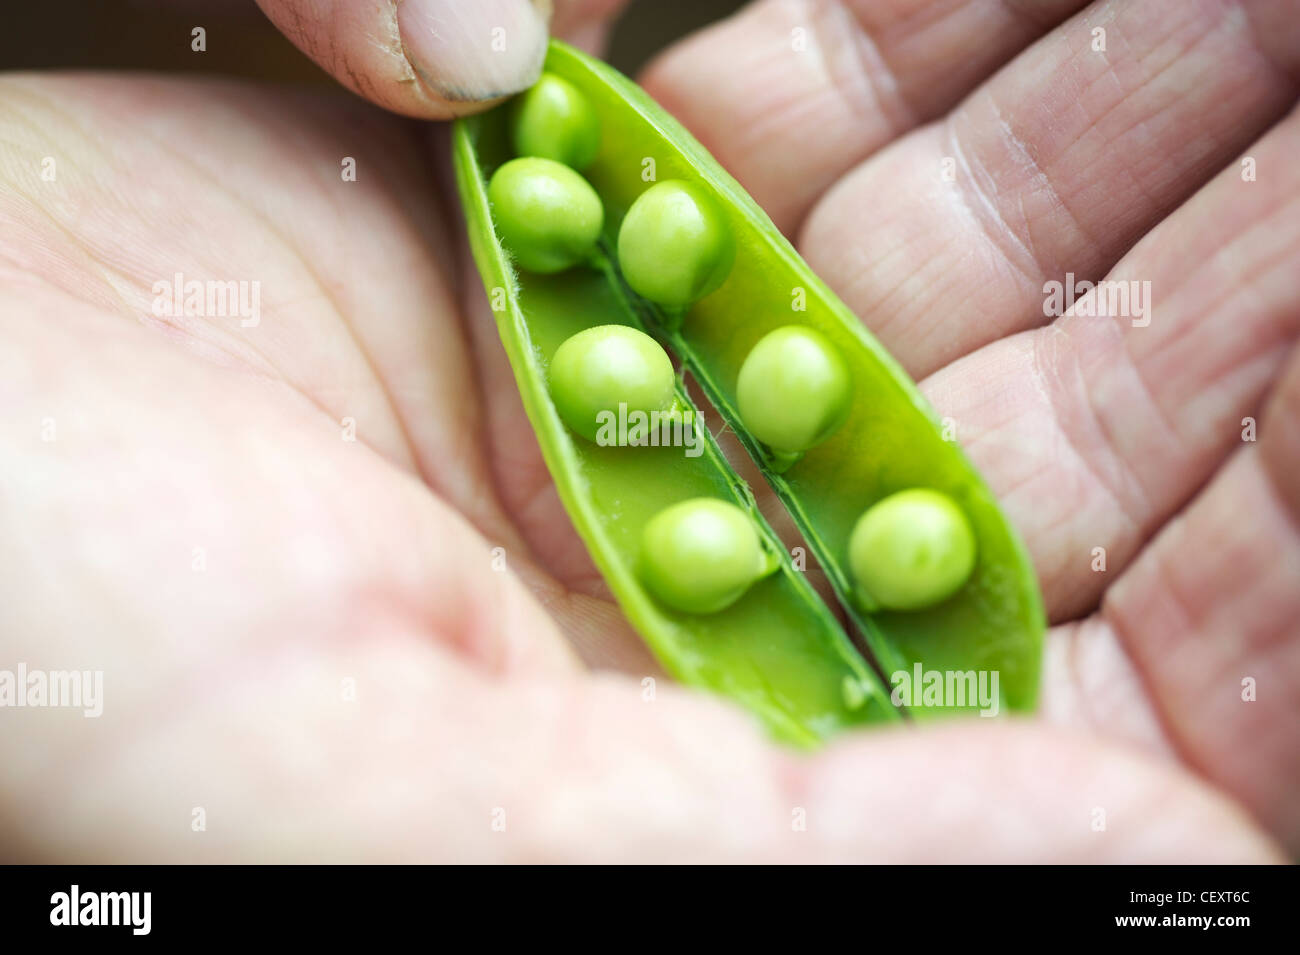 Personnes âgées gardener holding freshly picked petits pois dans une cosse Banque D'Images